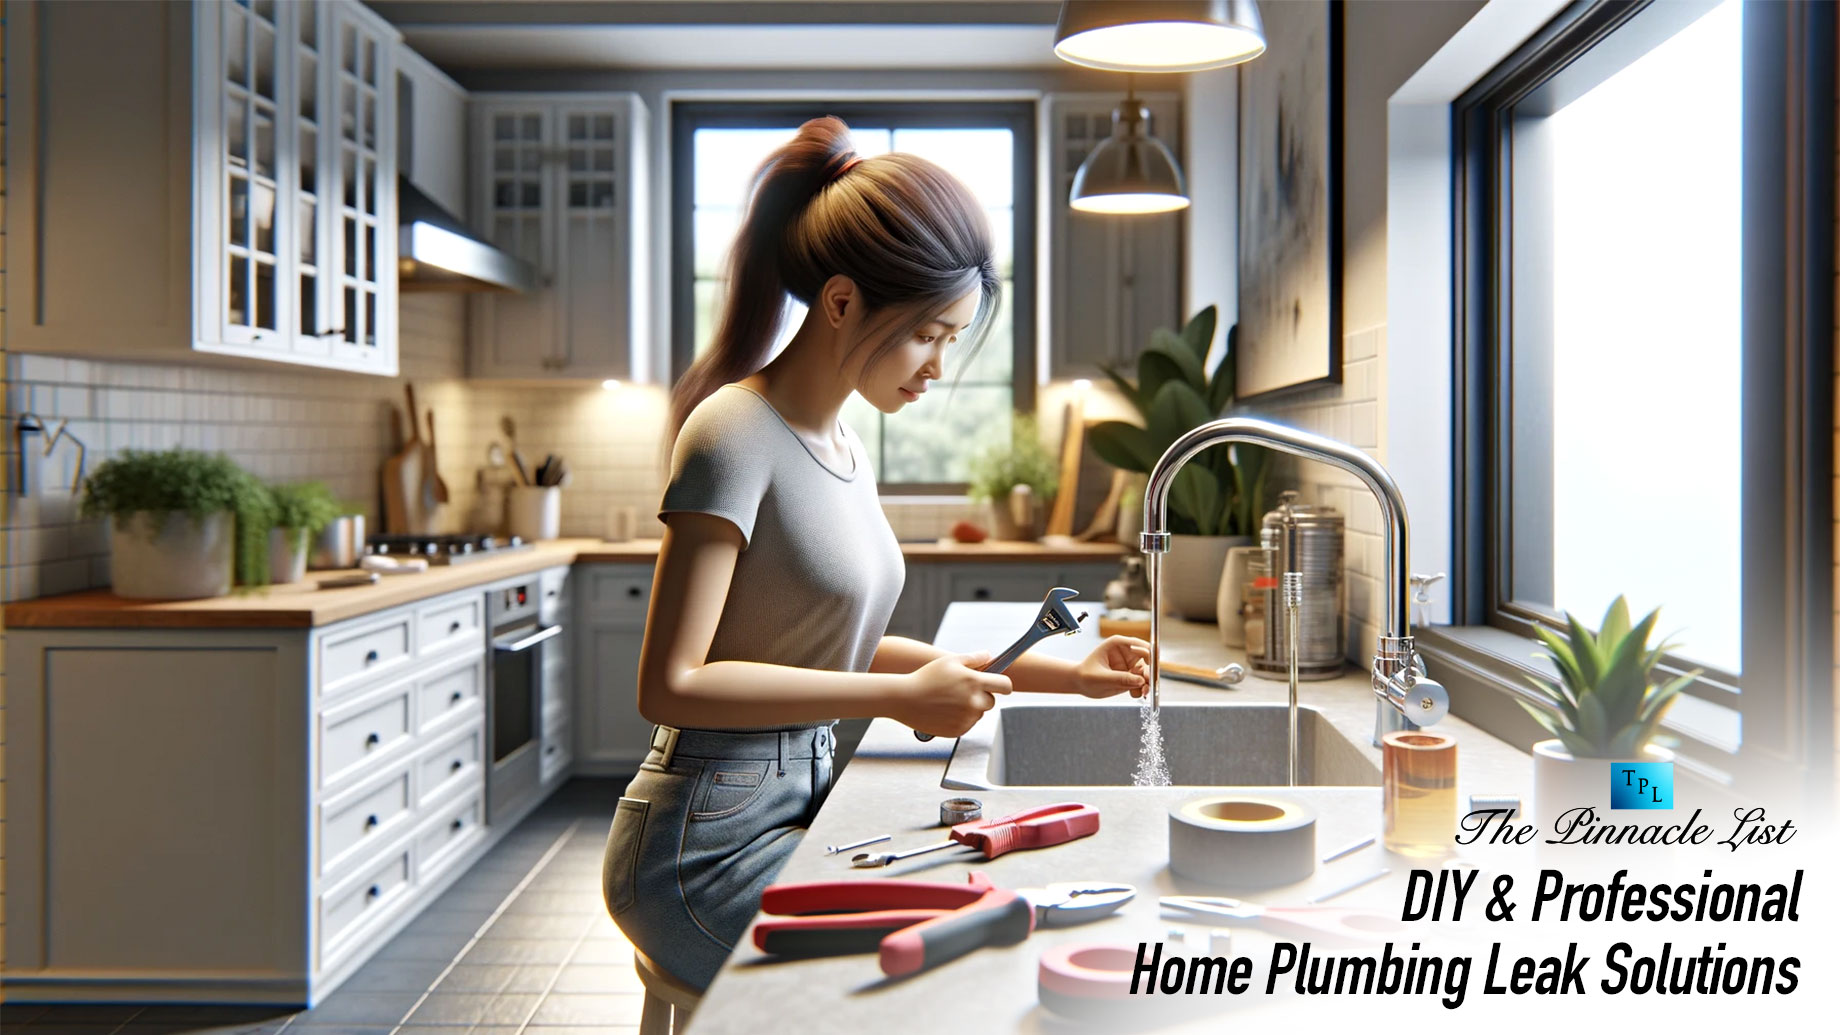 DIY & Professional Home Plumbing Leak Solutions